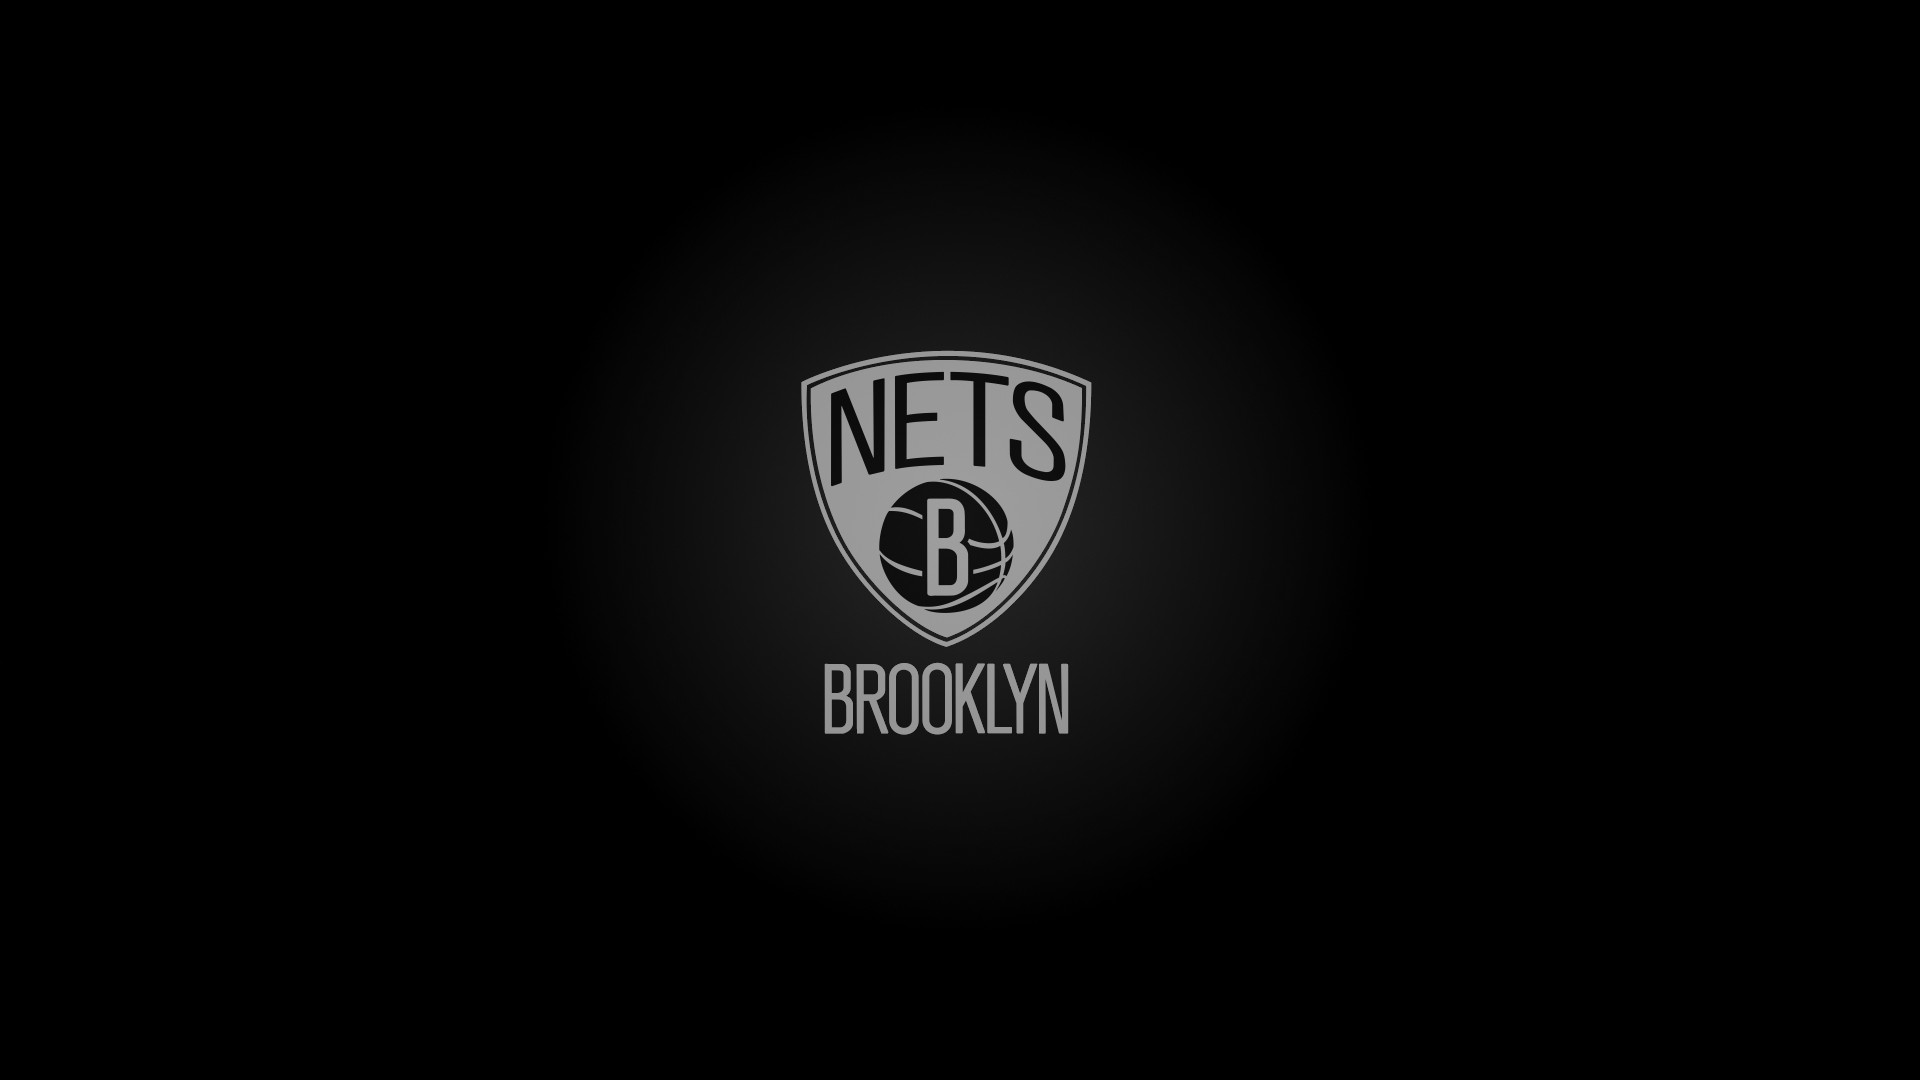 Windows Wallpaper Brooklyn Nets 2019 Basketball Wallpaper